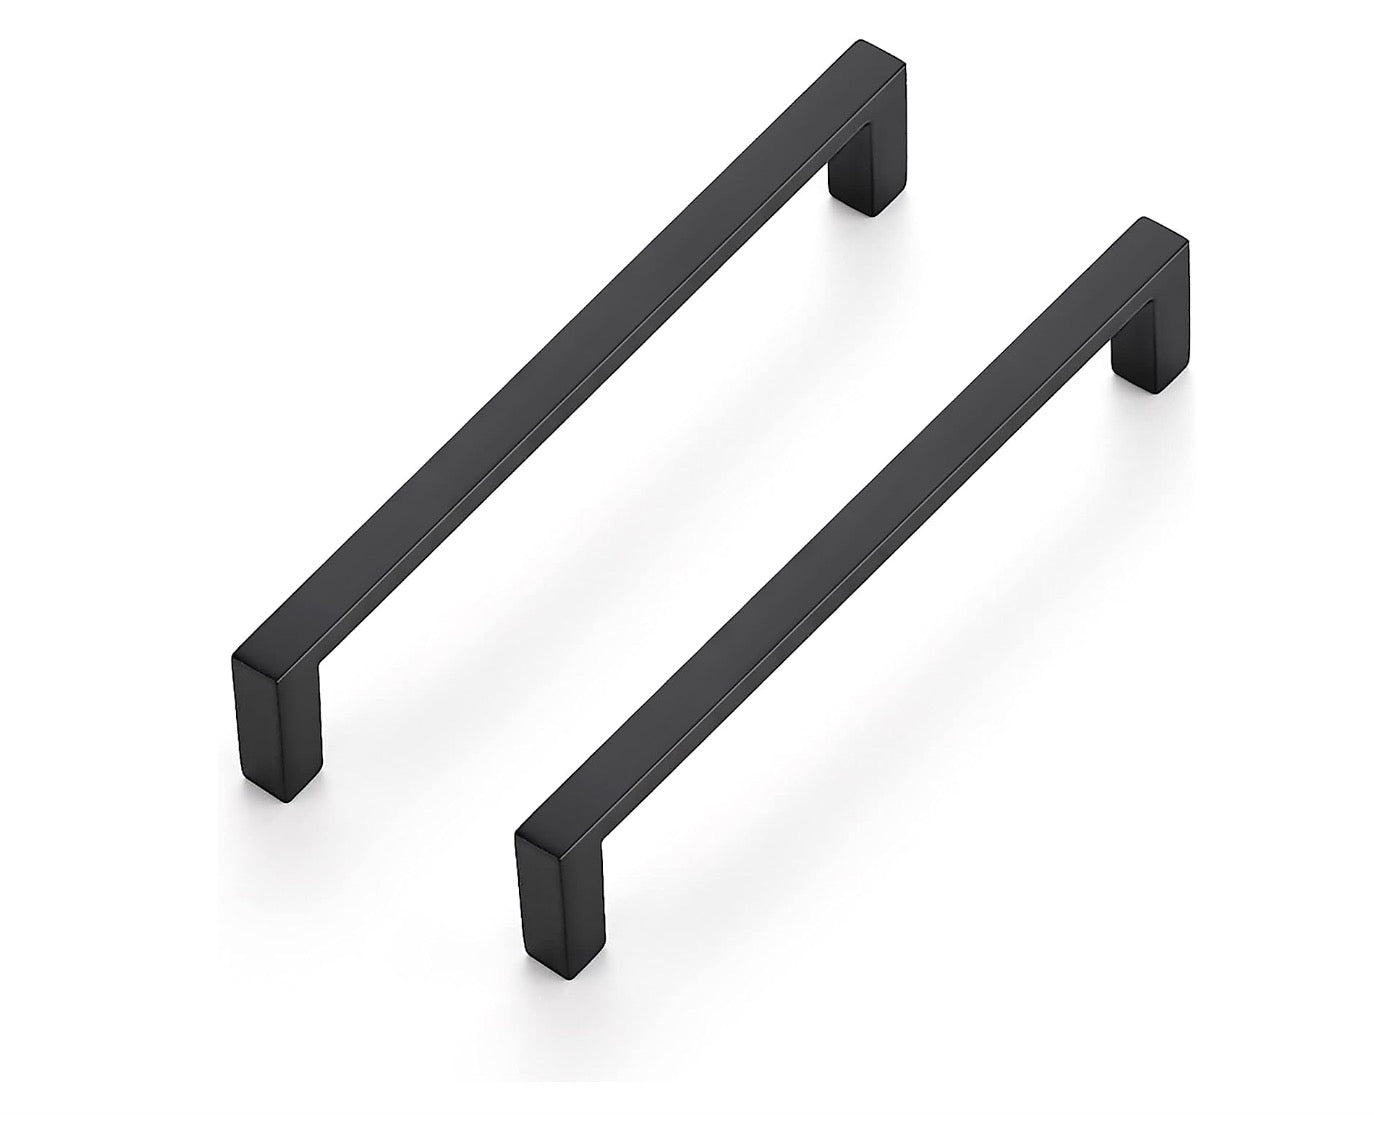 Premium 8" Square Cabinet Pulls: Rust-Resistant 304 Grade Stainless Steel, Classic Steel or Elegant Black Finish